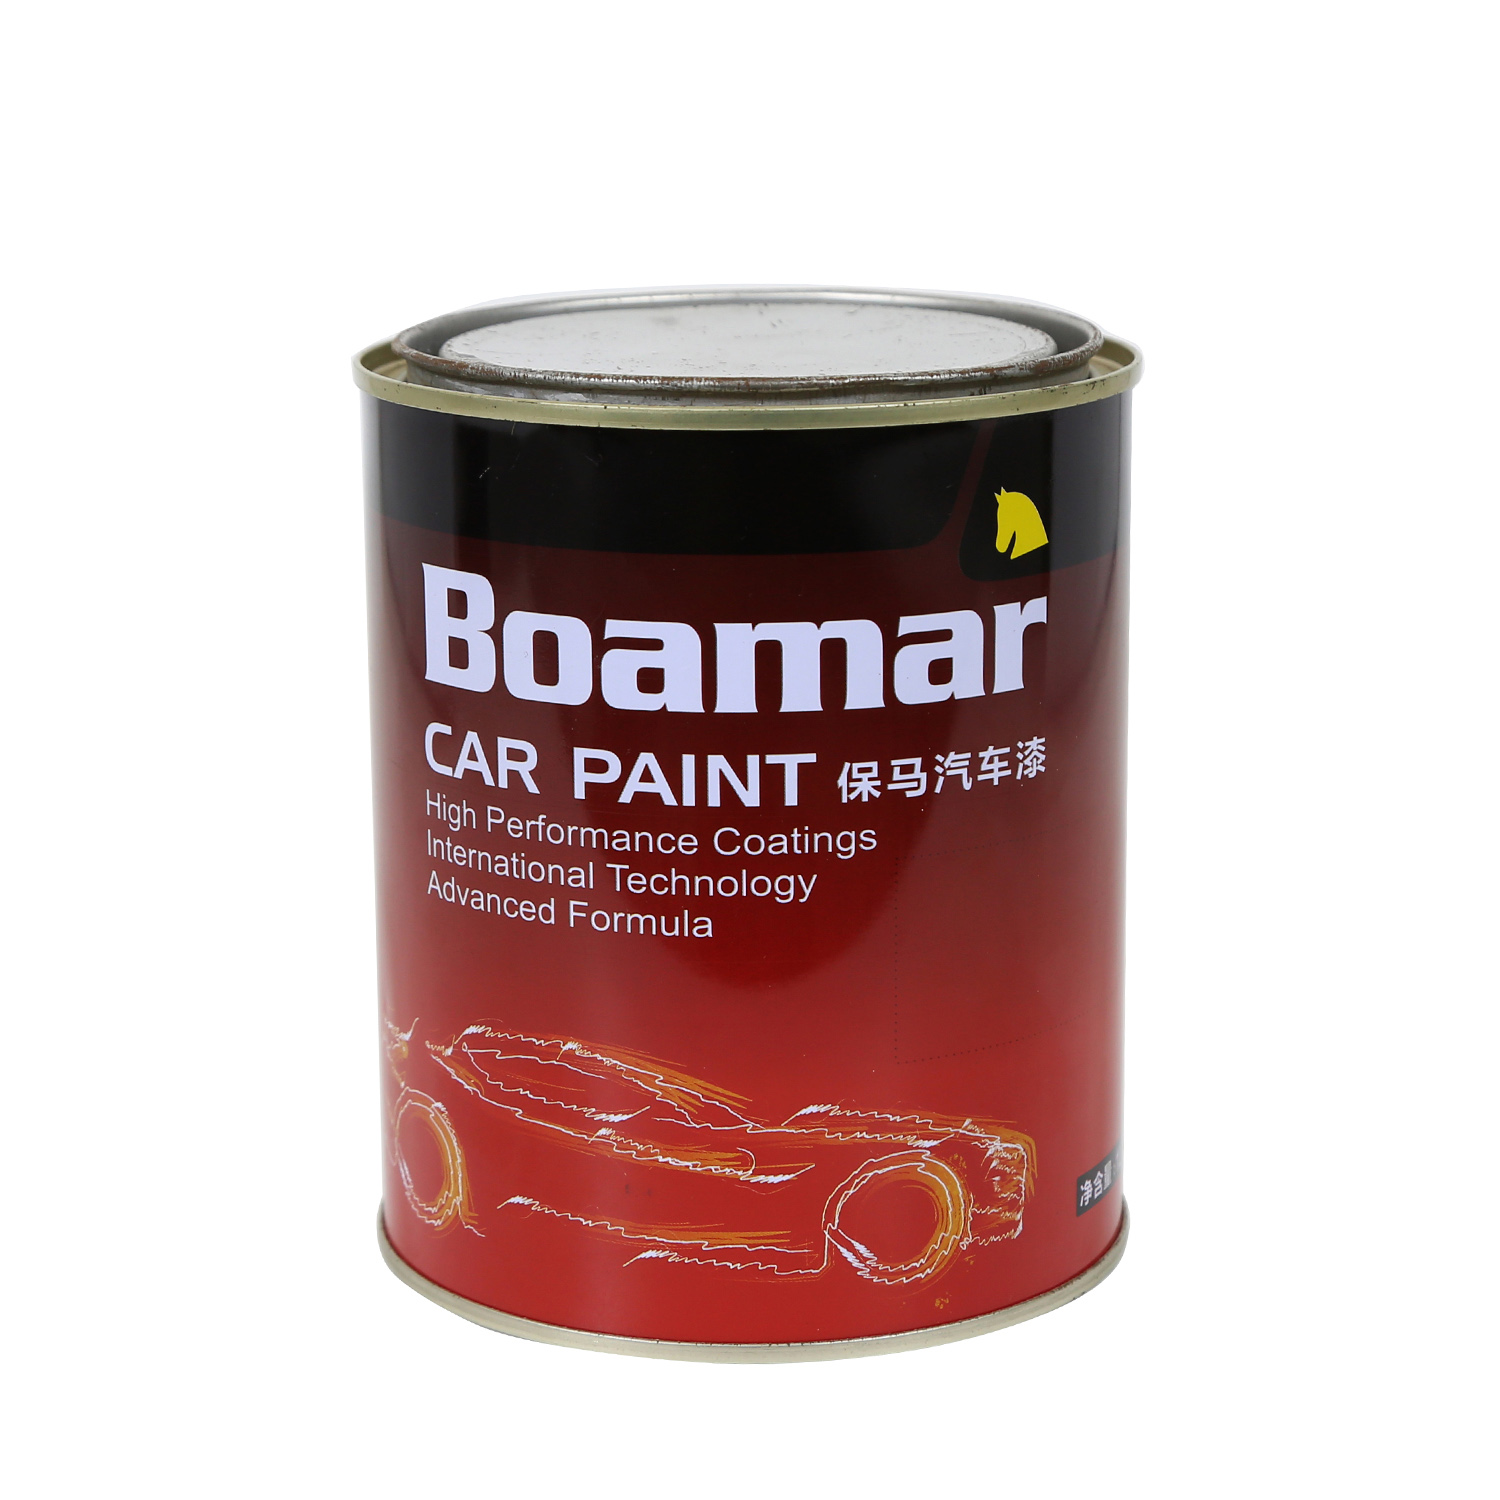 Boamar 2K Topcoat Car Paint